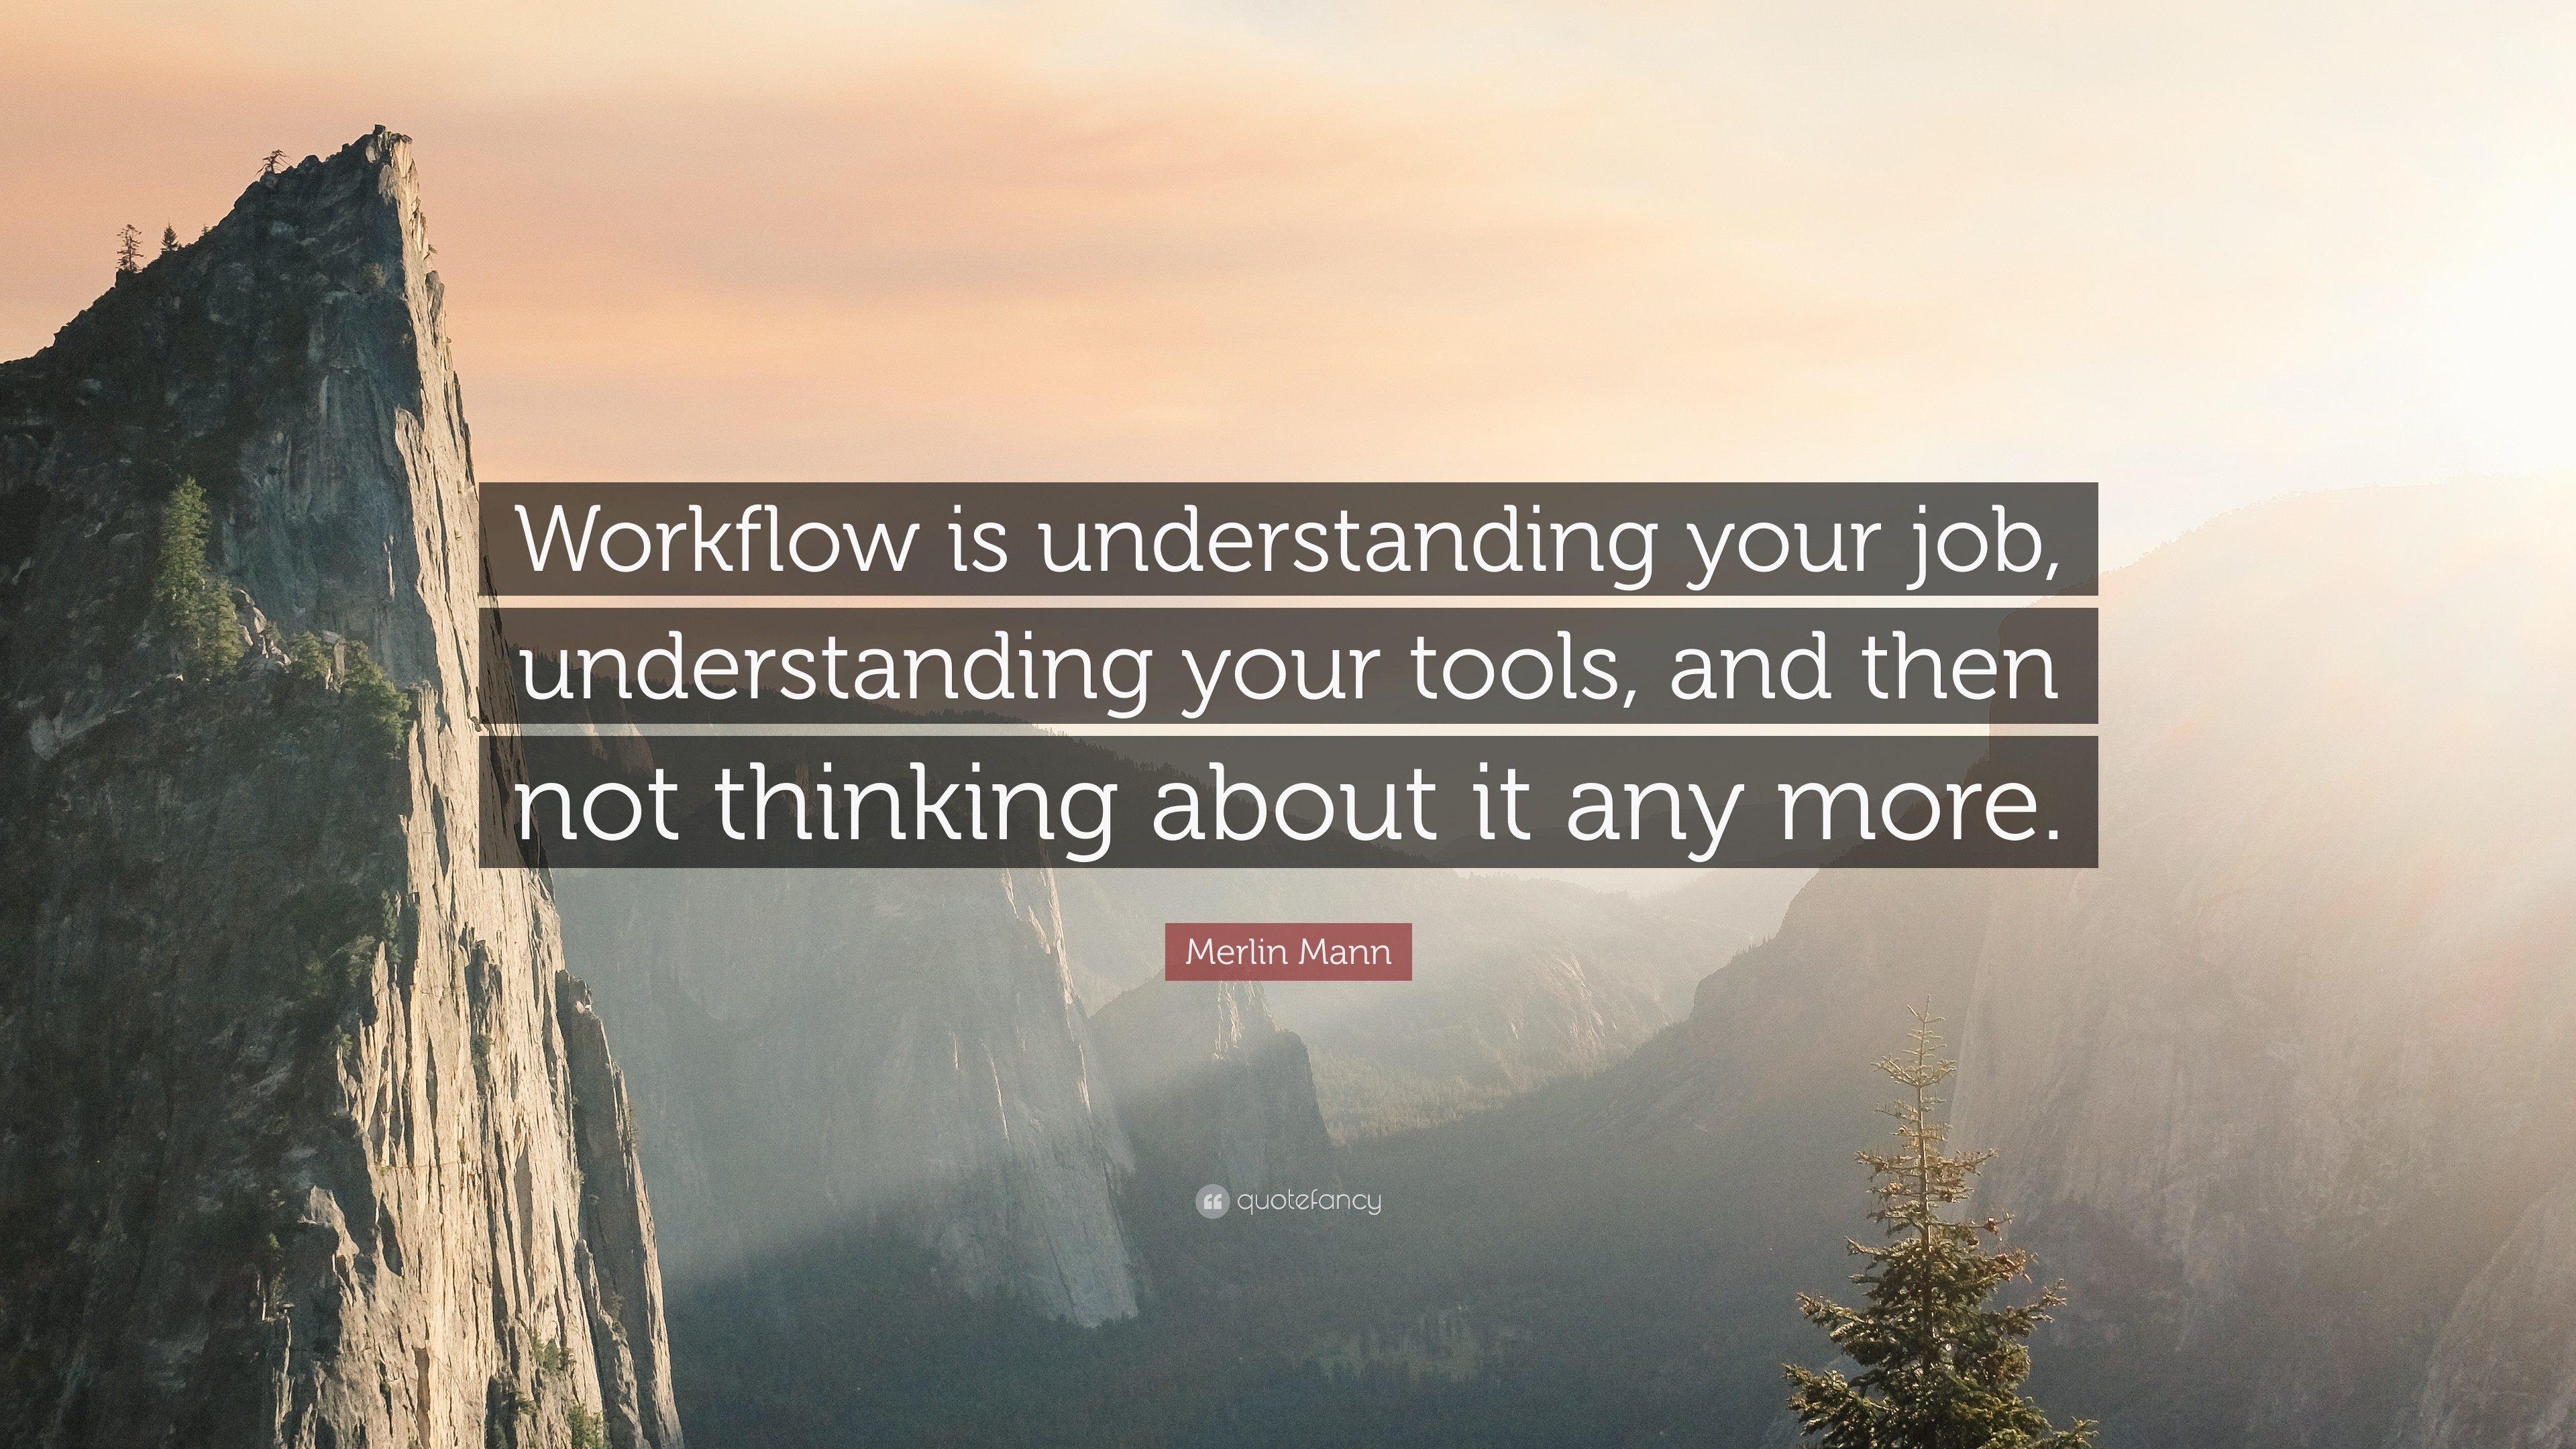 3840x2160 Merlin Mann Quote: “Workflow is understanding your job, understanding your  tools, and